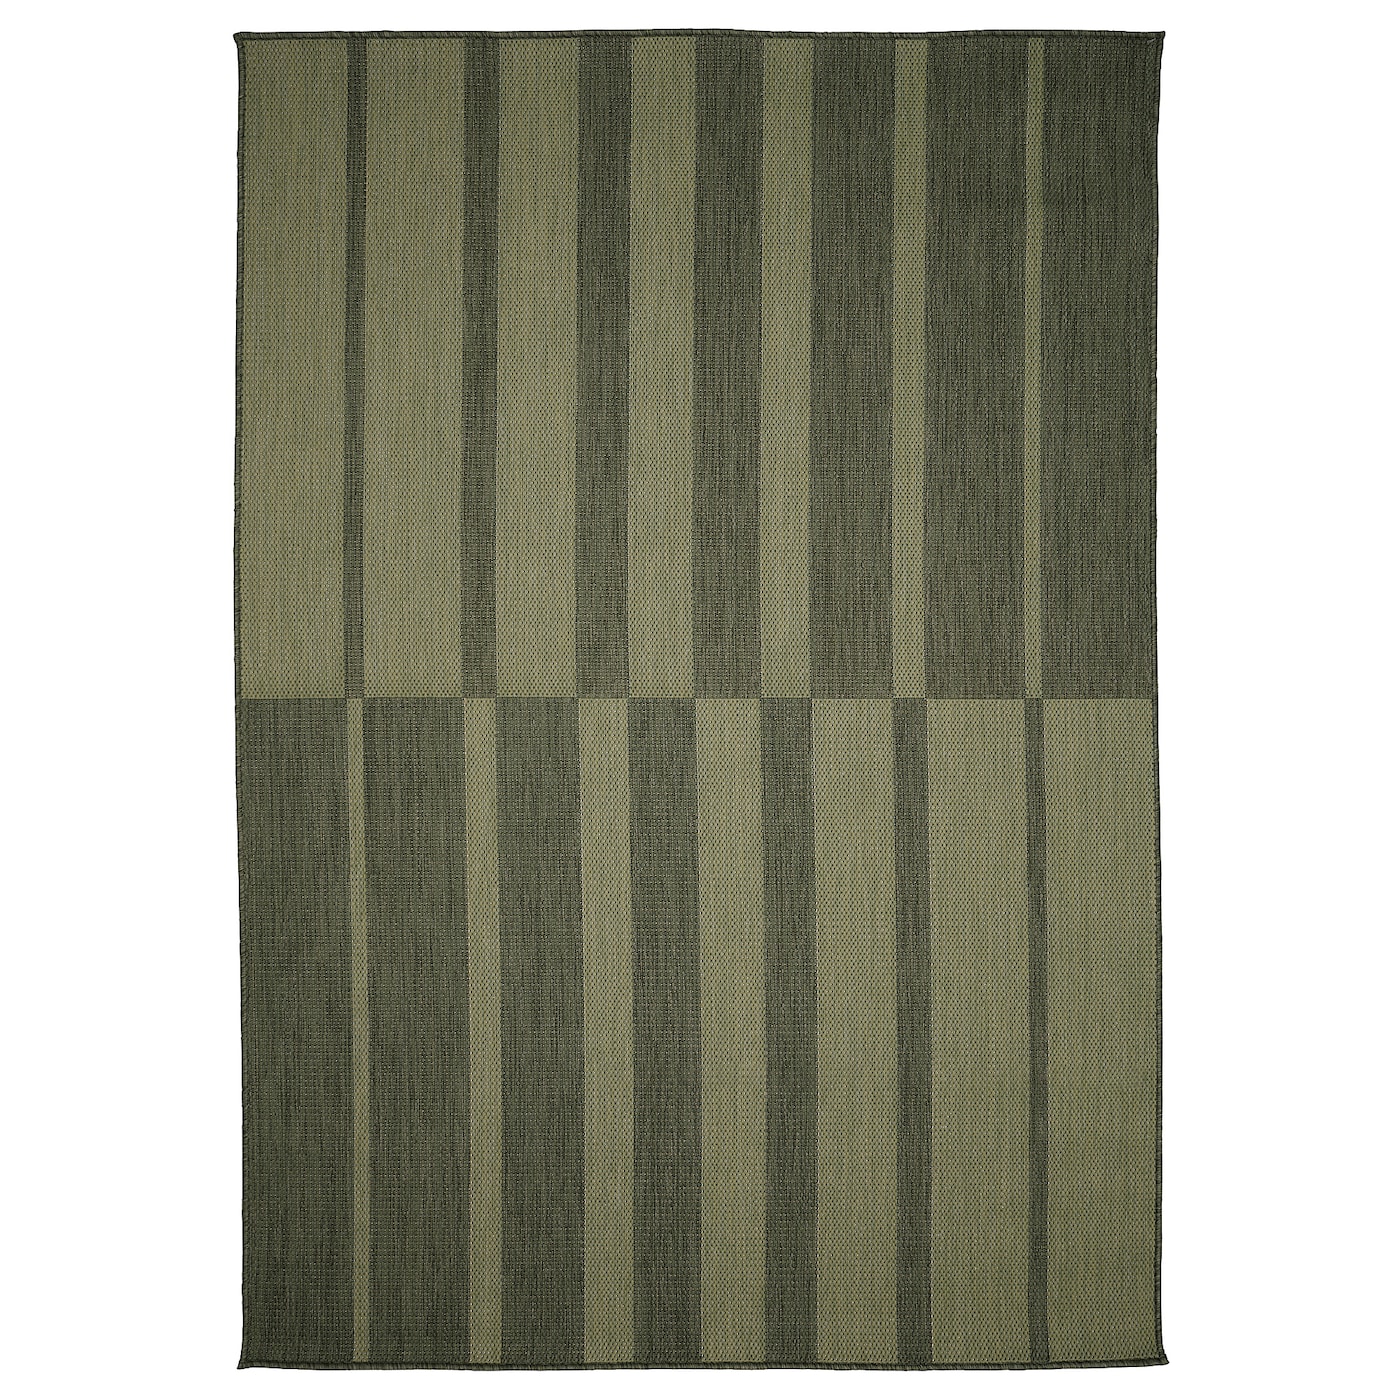 Текстильный ковер для дома и улицы - IKEA KANTSTOLPE/КАНТСТОЛП ИКЕА, 300х200 см, зеленый